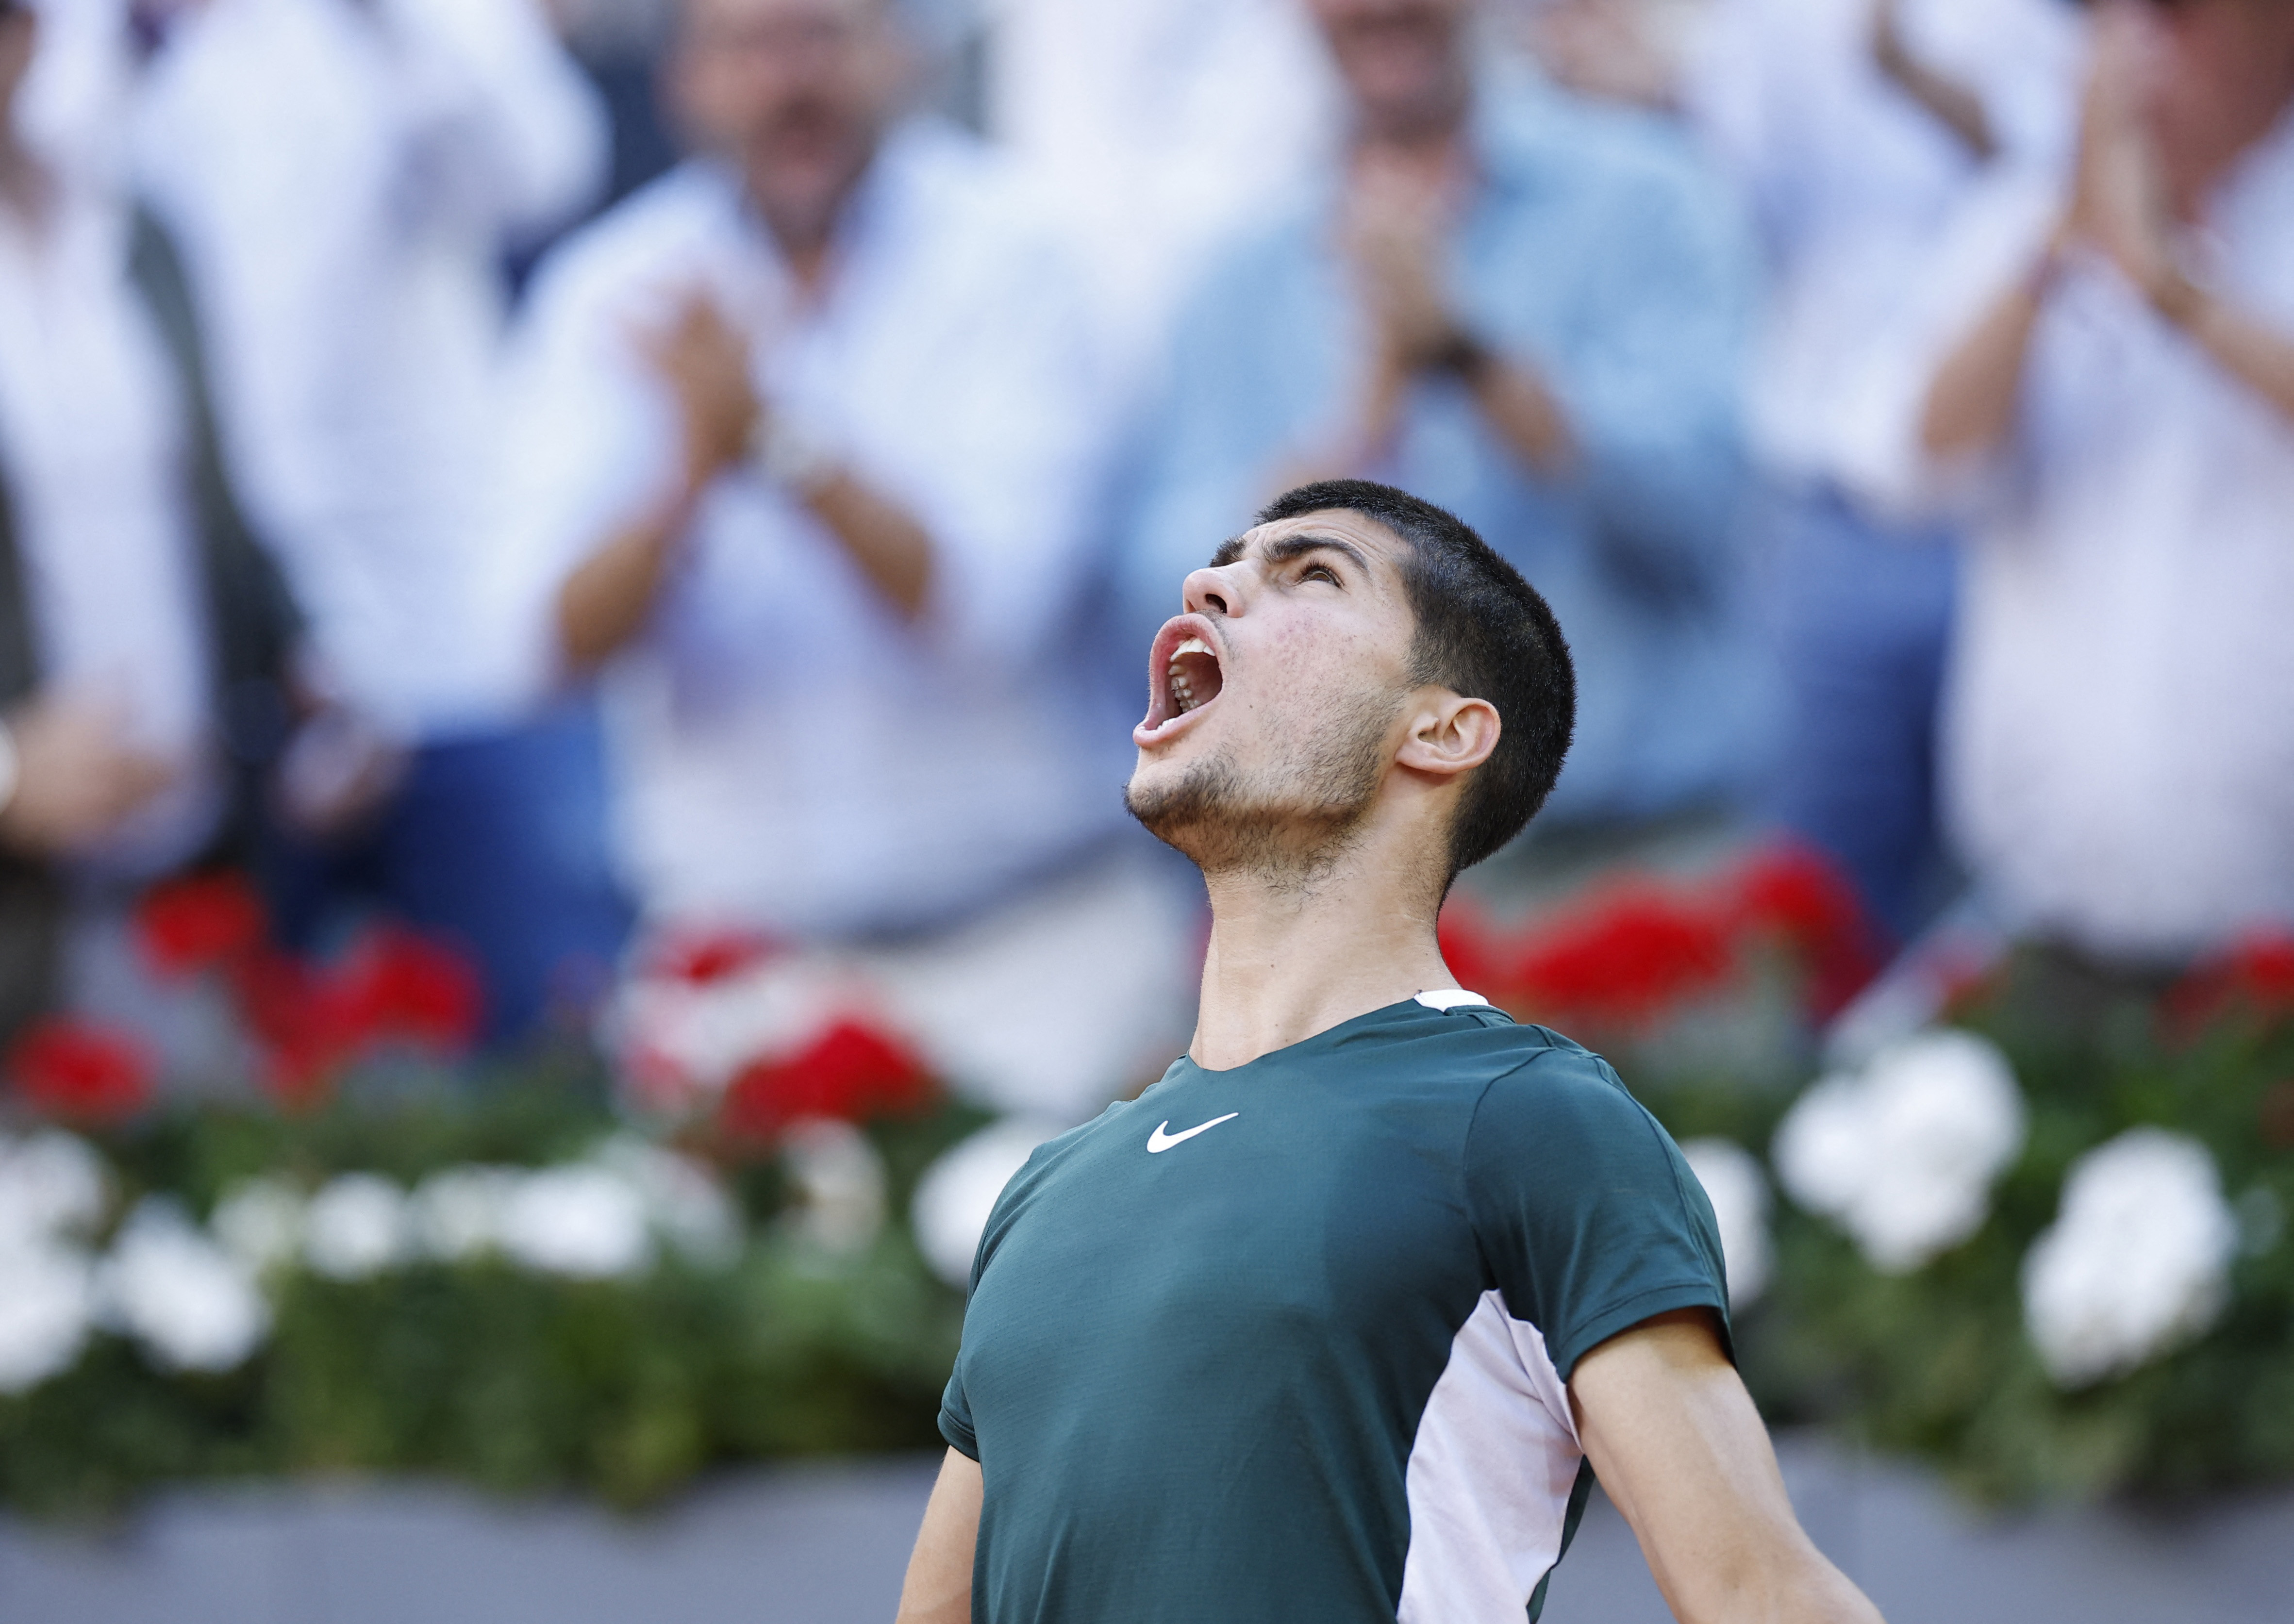 "¡Vamooos!", gritó al cielo tras confirmar su victoria ante el N° 3 del mundo (REUTERS/Juan Medina)